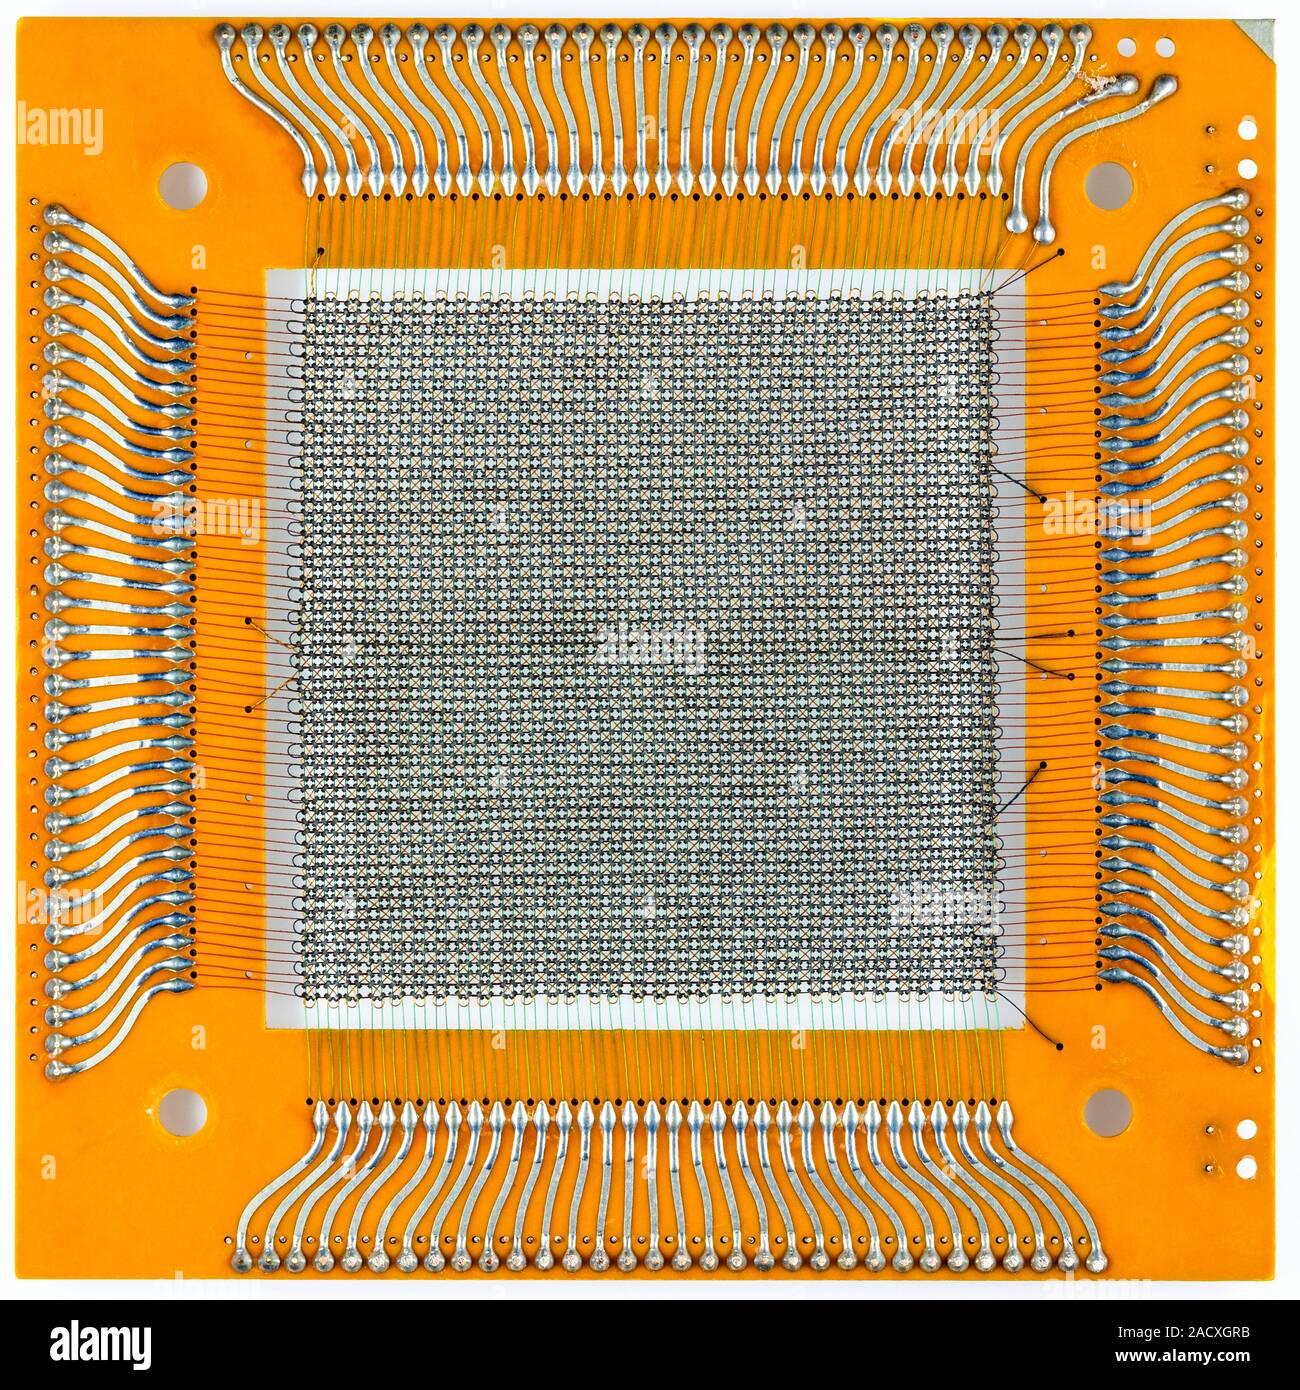 Placa de memoria de núcleo magnético de una computadora central  Honeywell-Bull construido en 1968. Utiliza toroids magnéticas diminutas ( anillos), los núcleos, a través del cual los cables Fotografía de stock -  Alamy